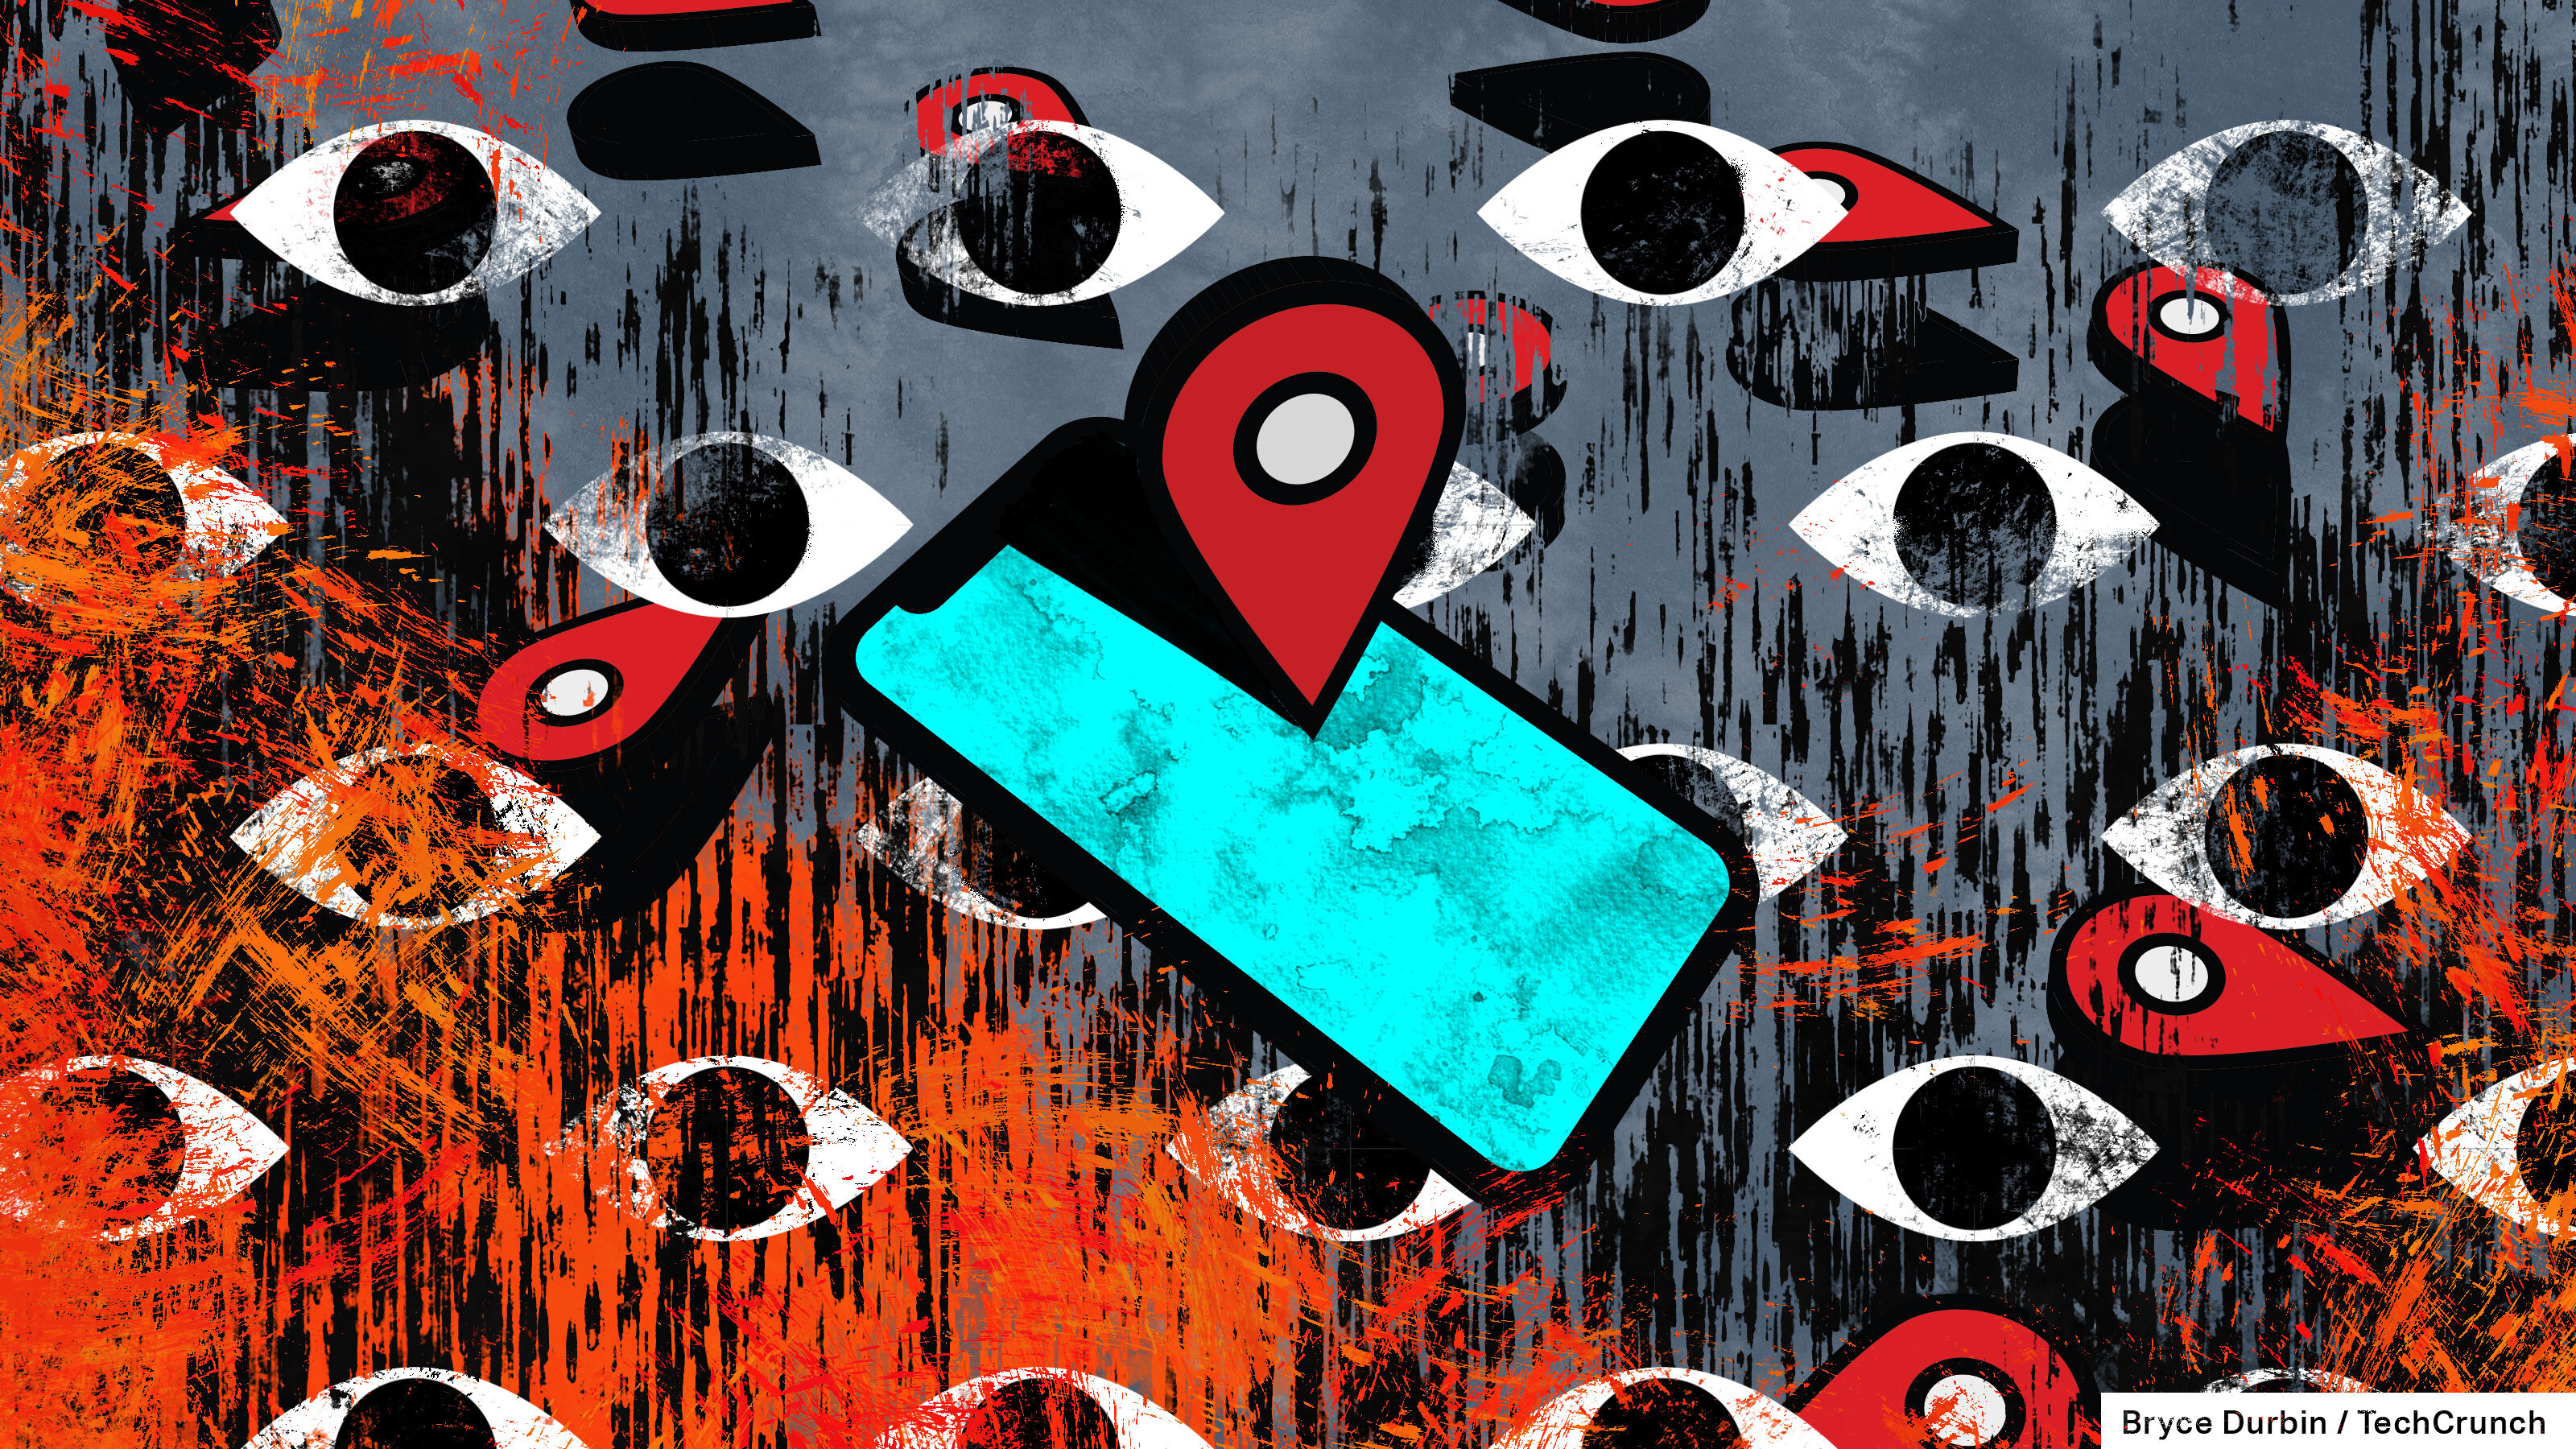 Une illustration d'un téléphone bleu allumé avec un pointeur d'emplacement dessus, sur un fond d'yeux mobiles rouges et bleus.